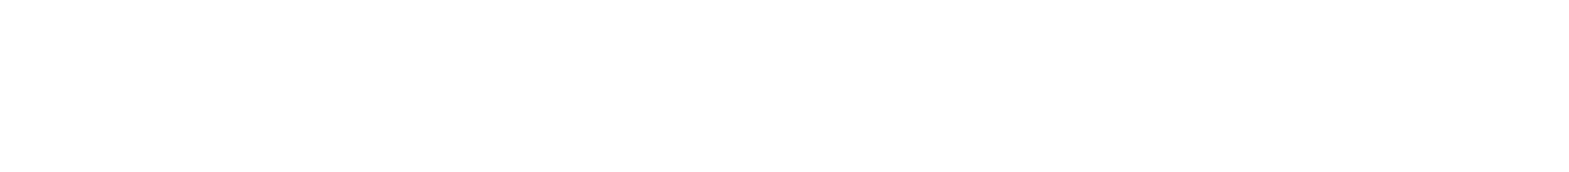 Harsco
 logo large for dark backgrounds (transparent PNG)